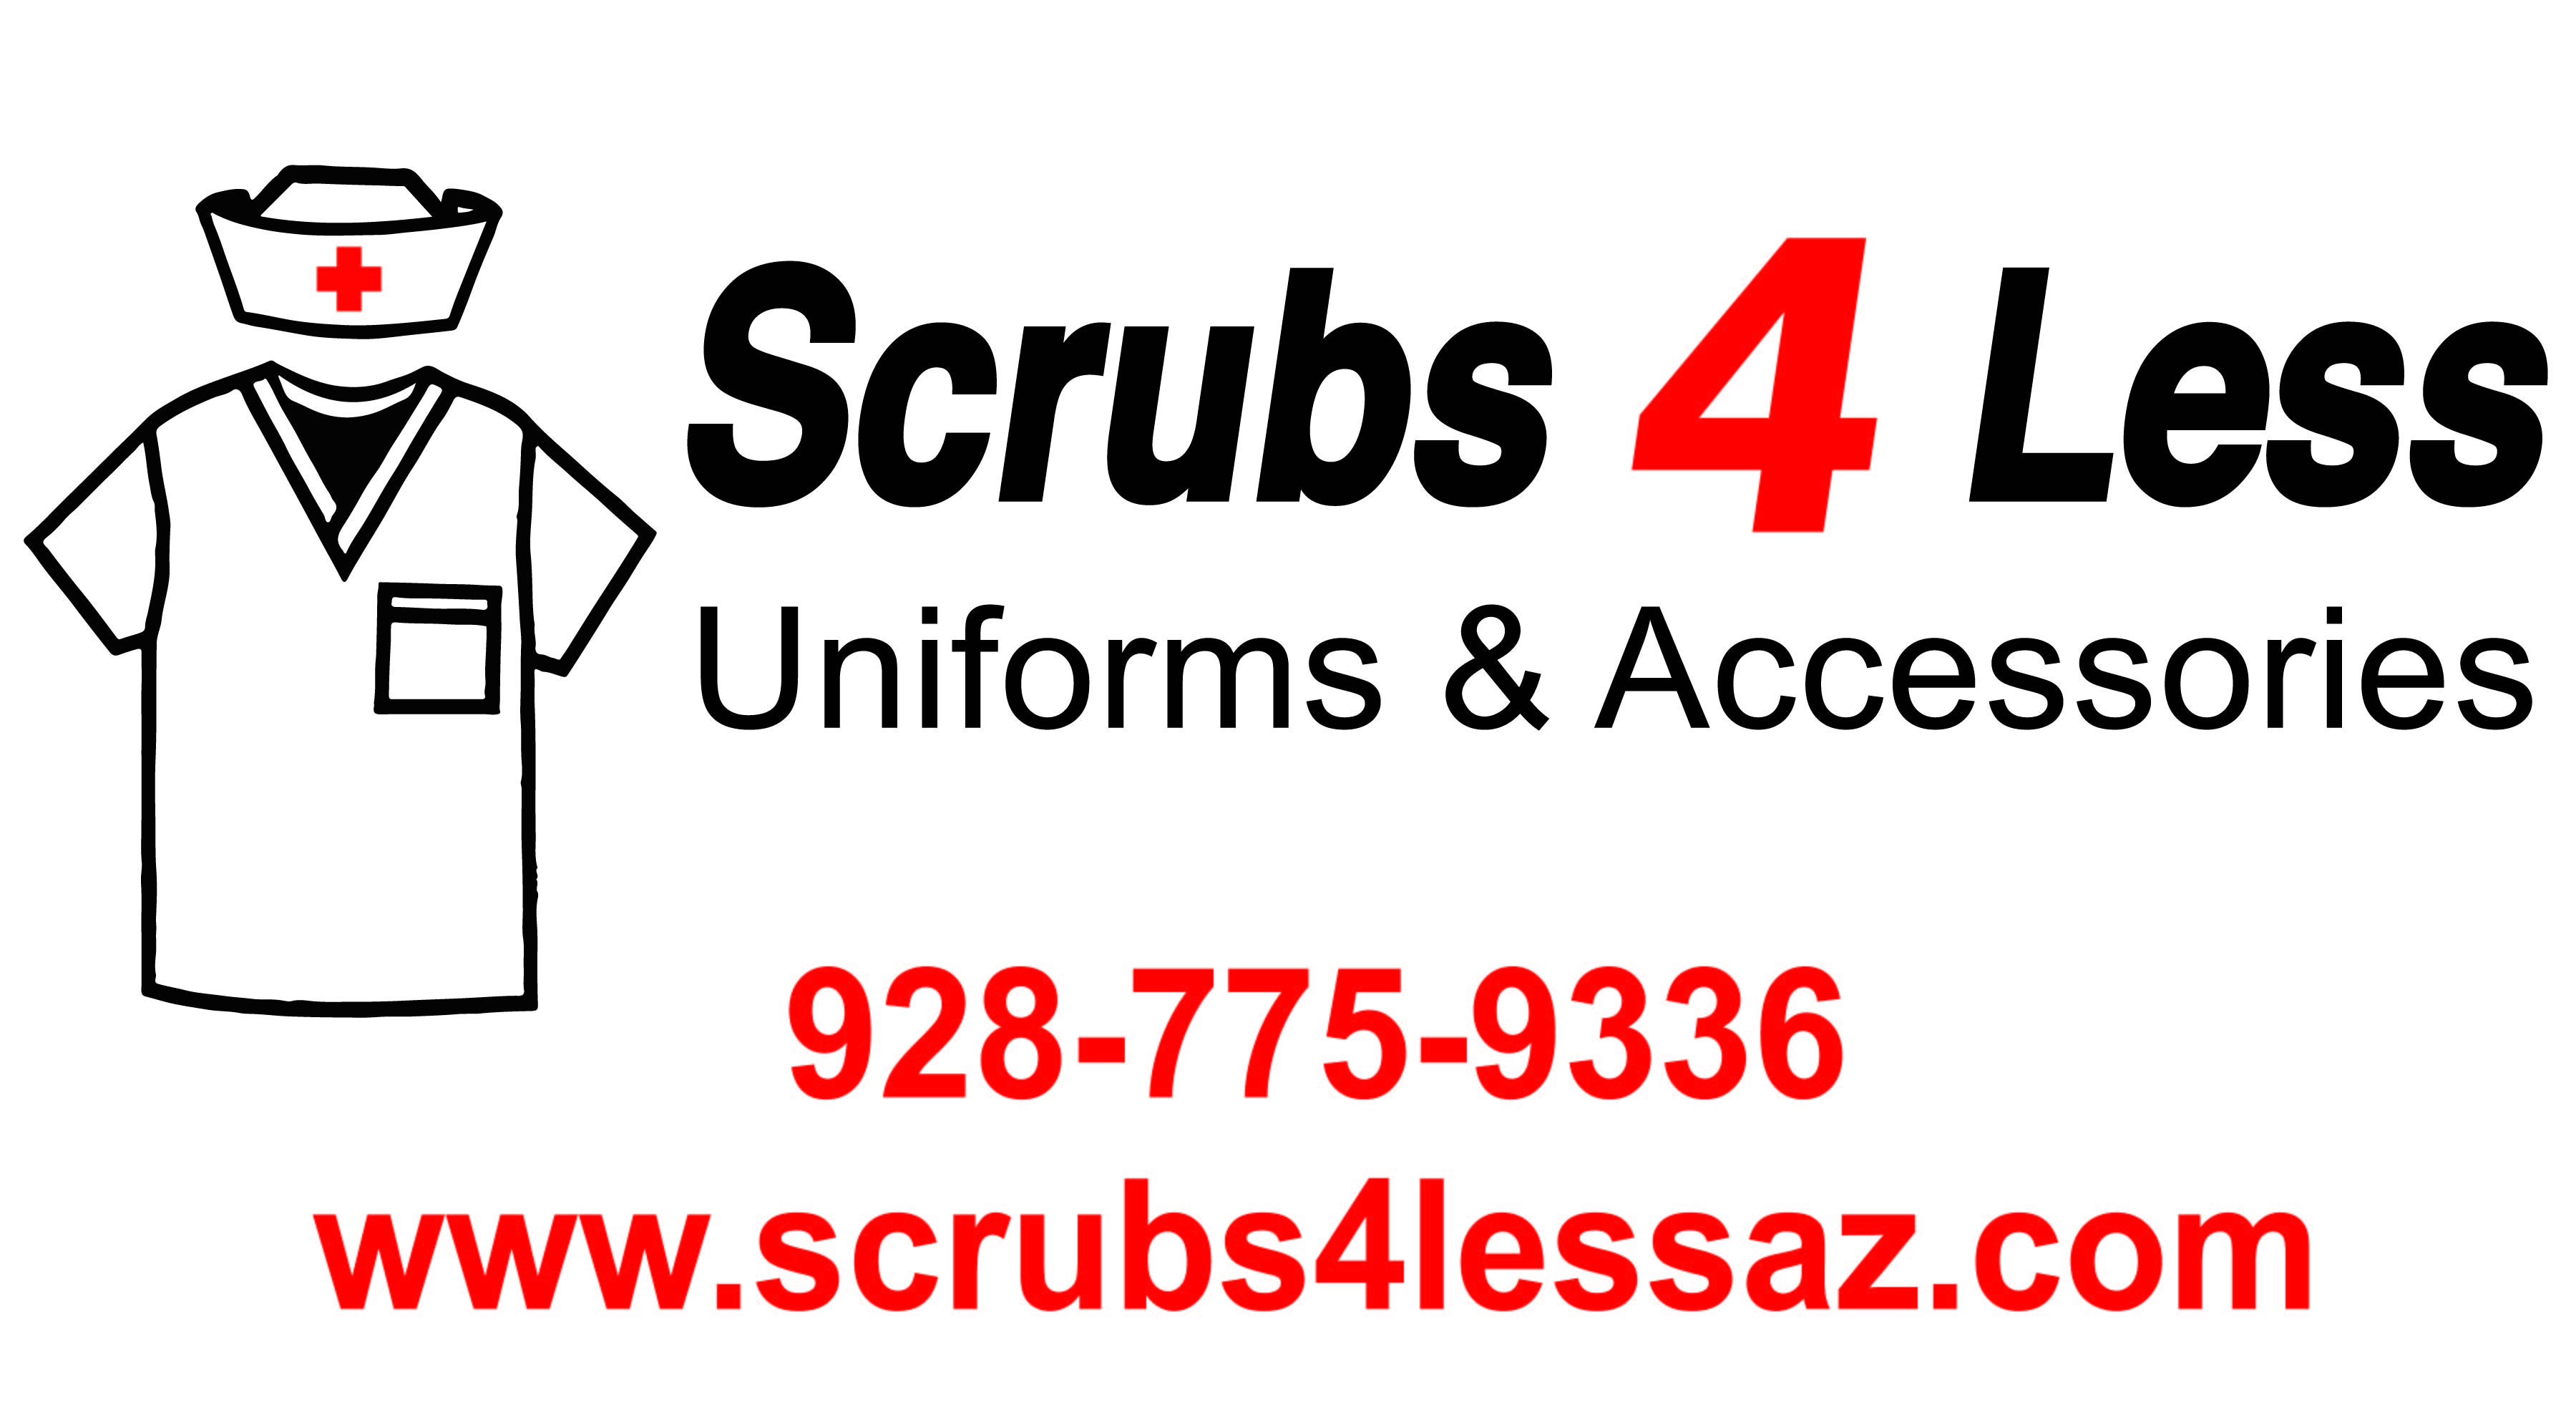 Scrubs 4 Less